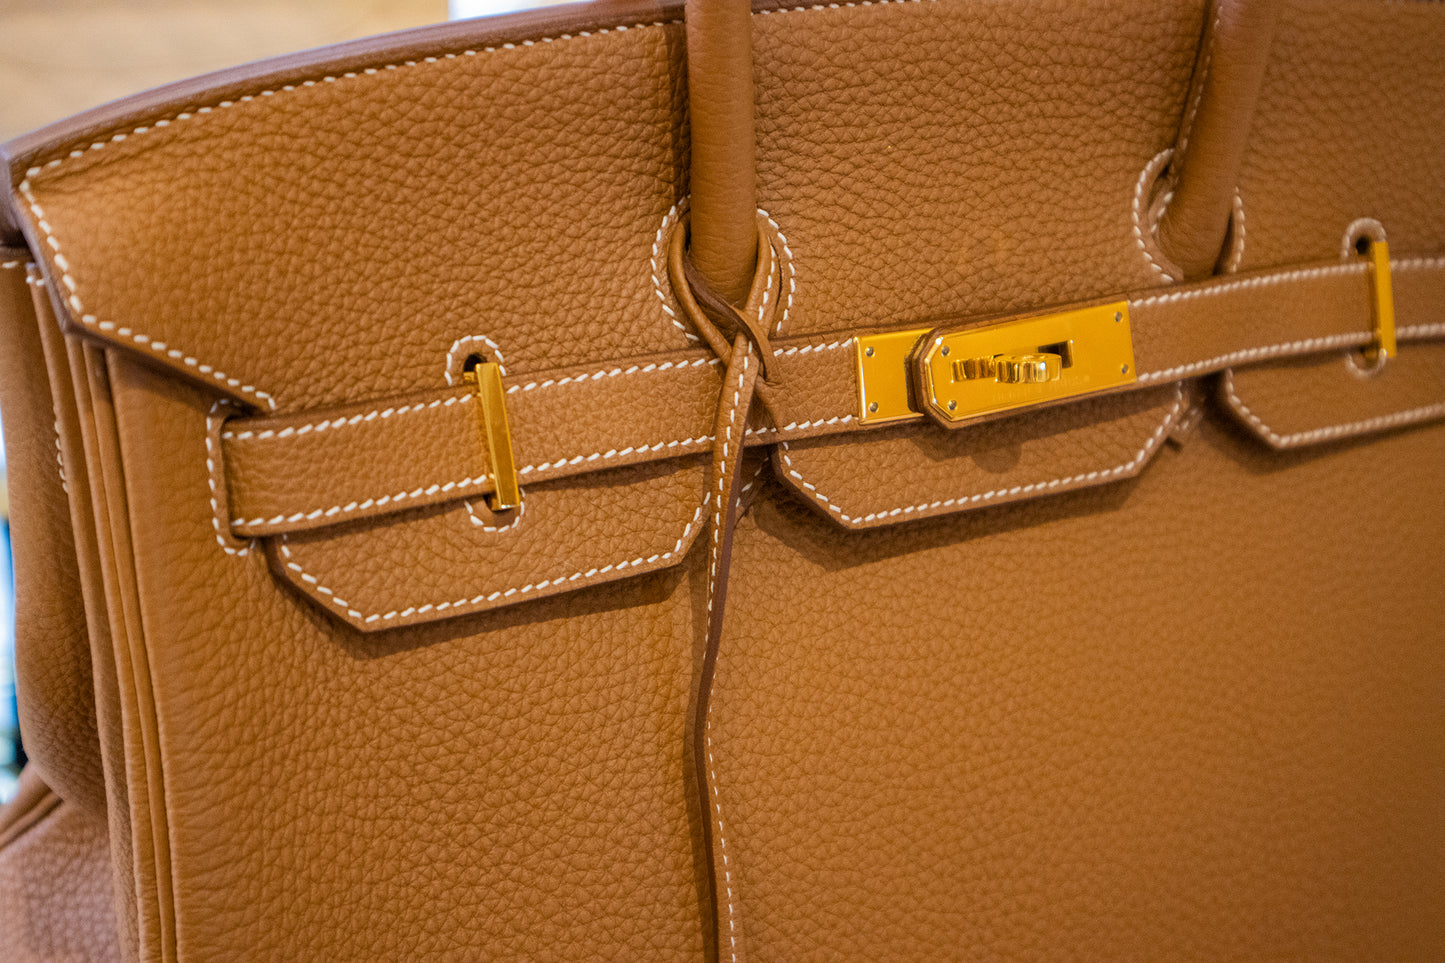 Hermès - Birkin Bag 35